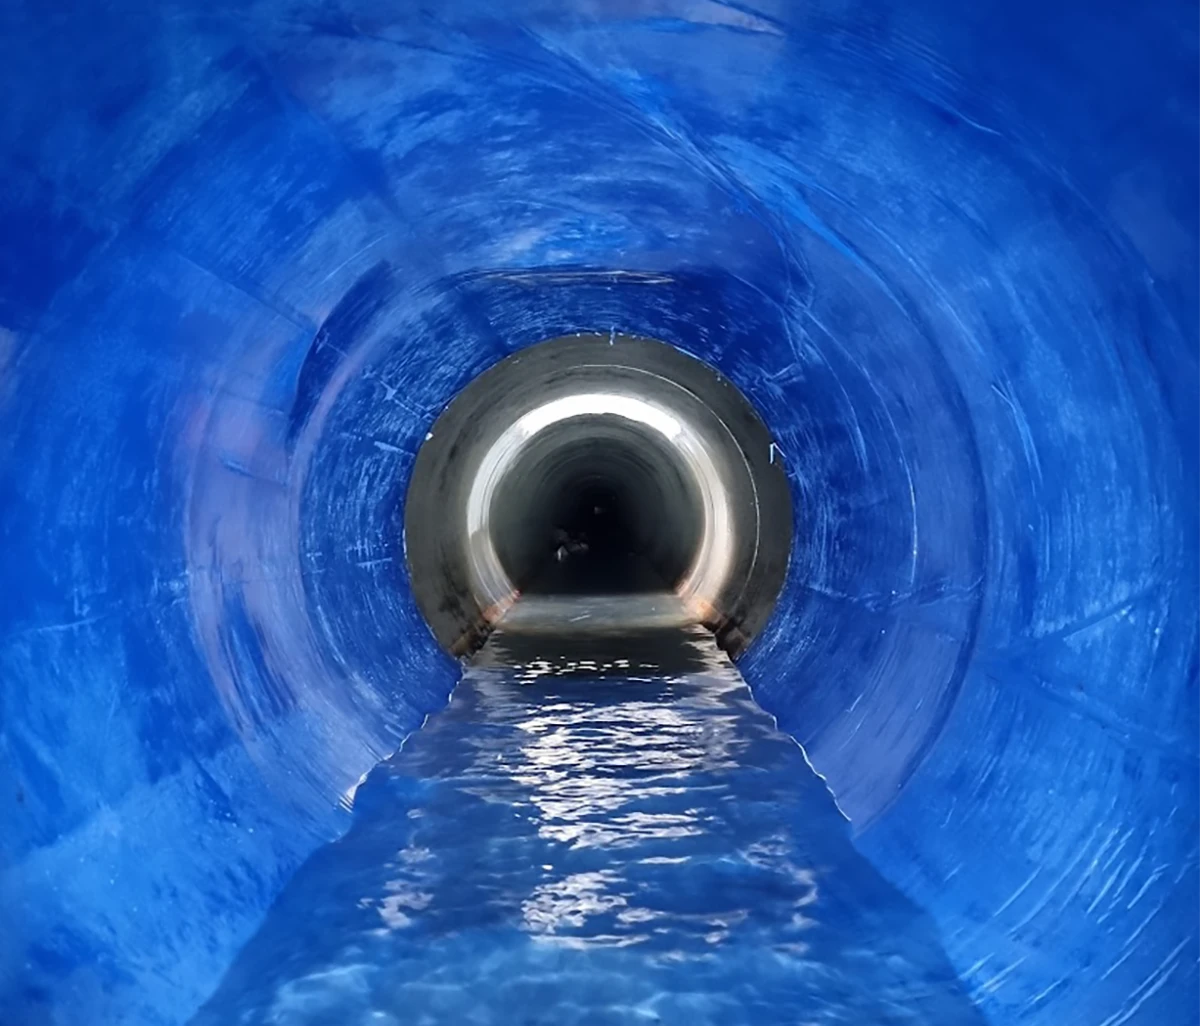 Inside Sumoline pipe